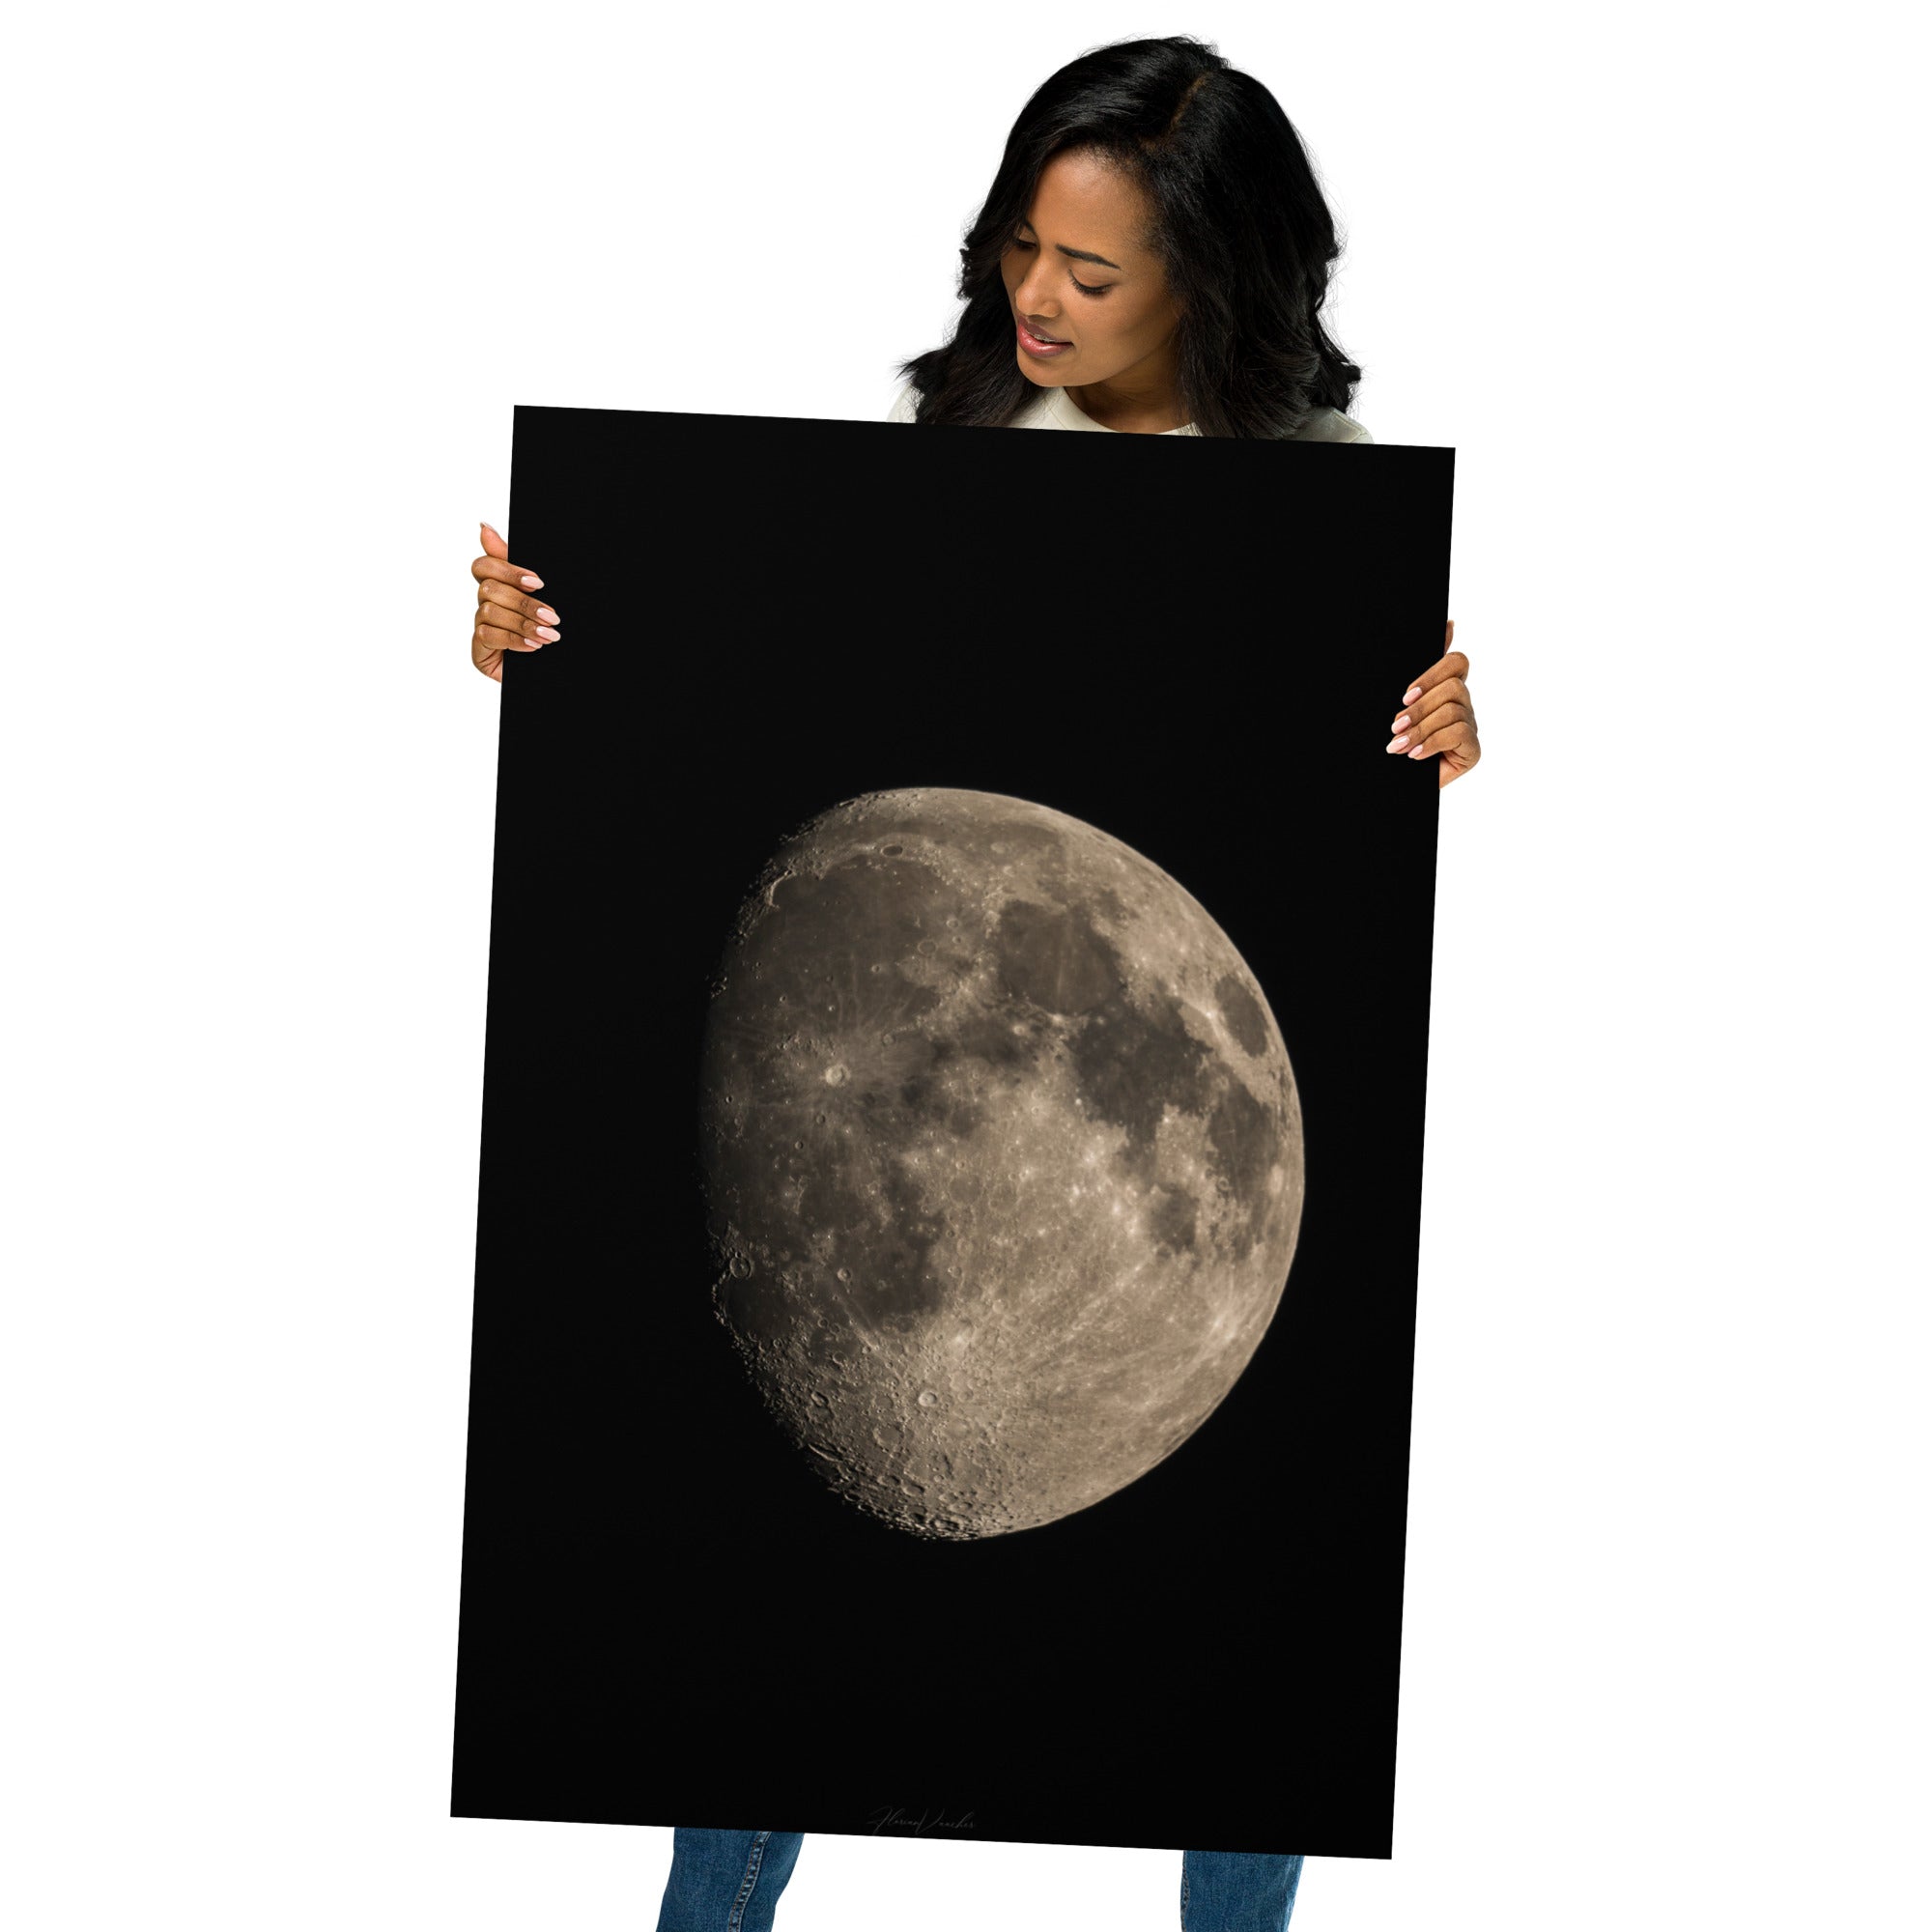 Image détaillée de la Lune montrant une moitié brillante et une moitié engloutie par l'ombre, une œuvre d'art photographique réalisée par Florian Vaucher.